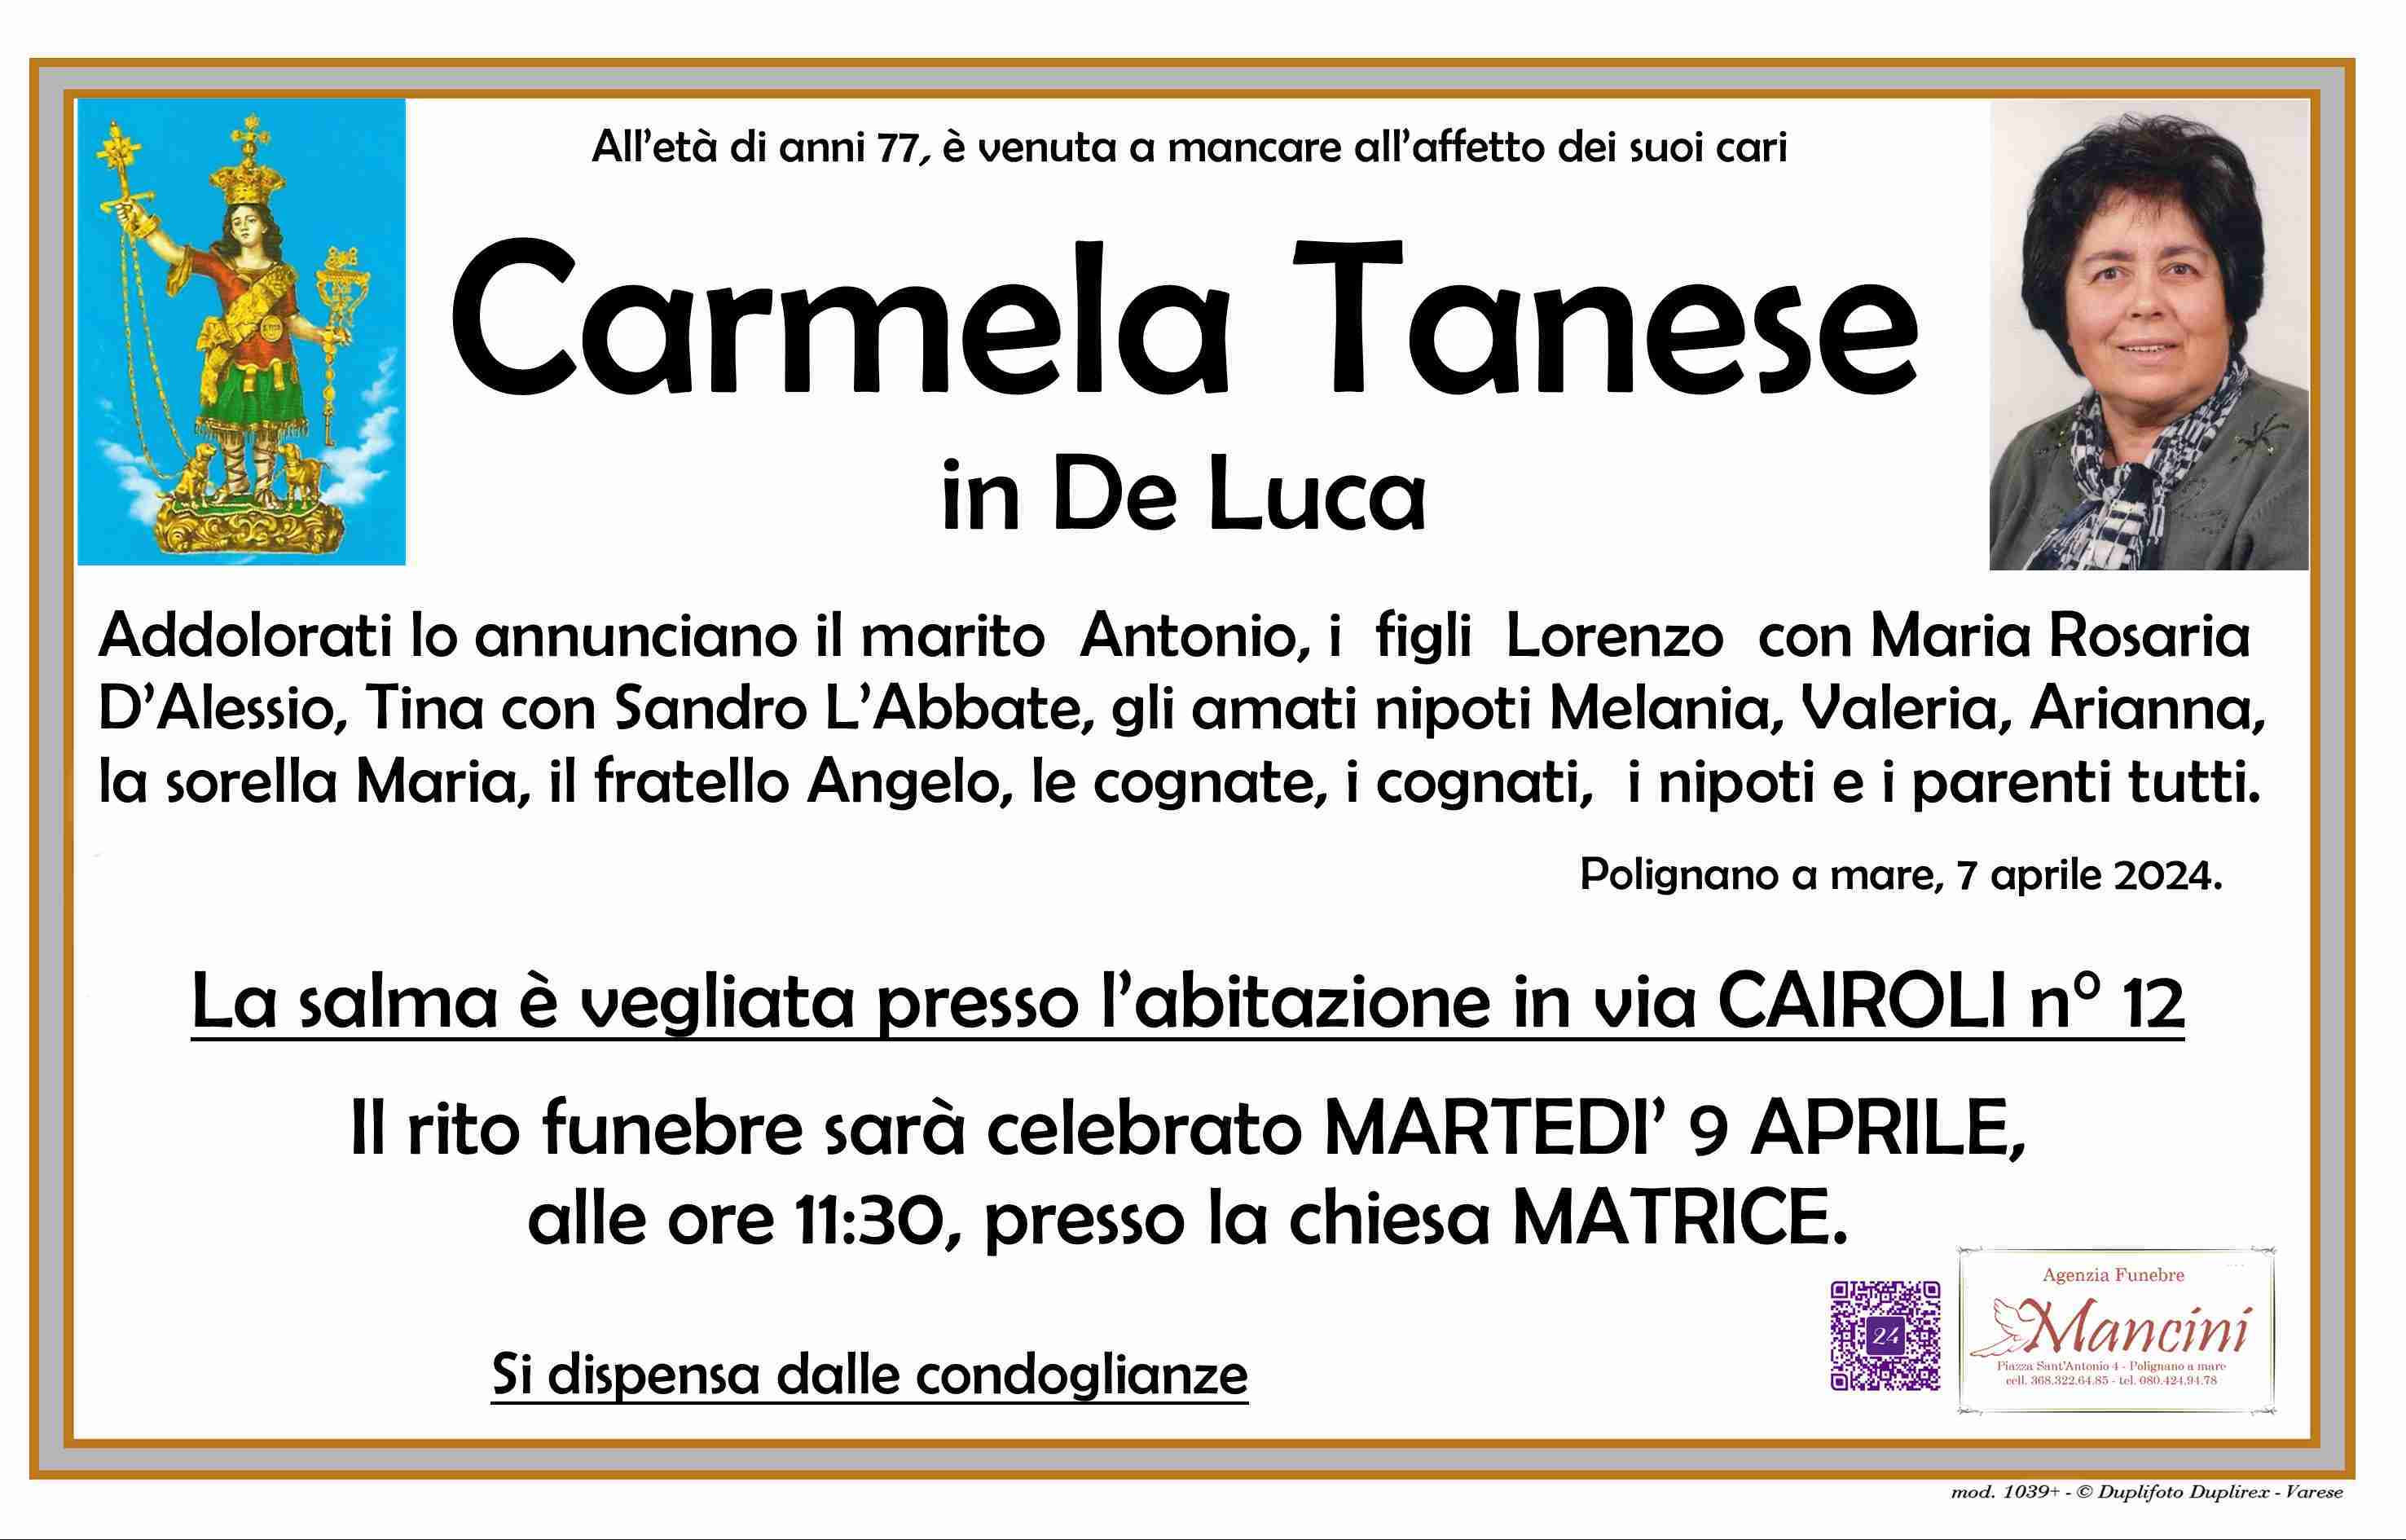 Carmela Tanese